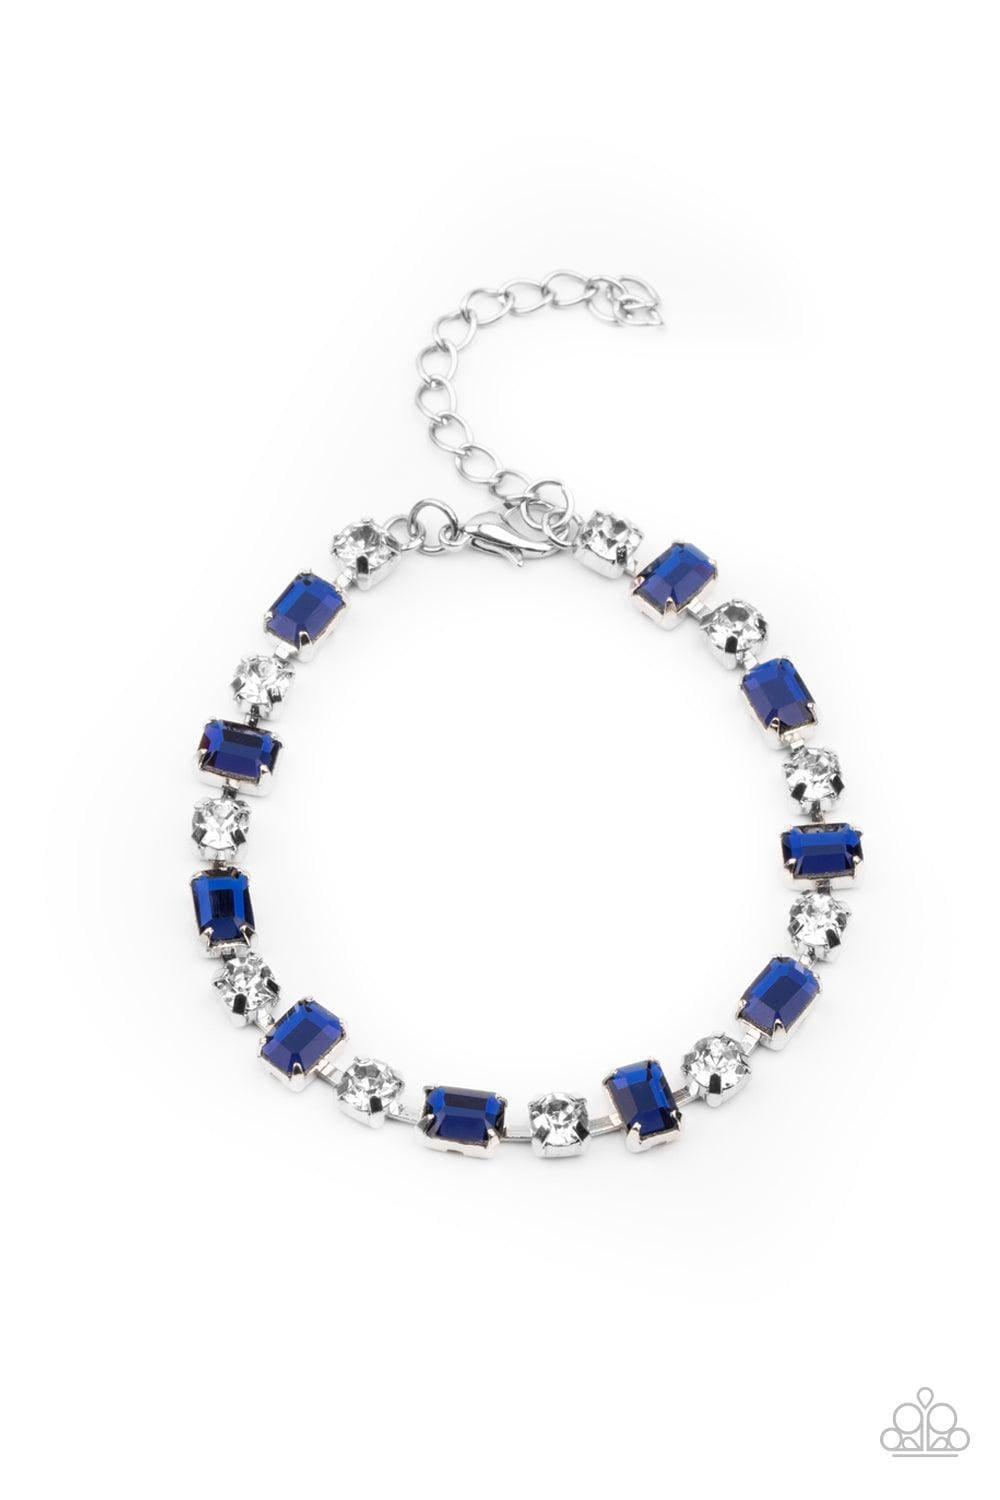 Paparazzi Accessories - Out In Full Fierce - Blue Bracelet - Bling by JessieK